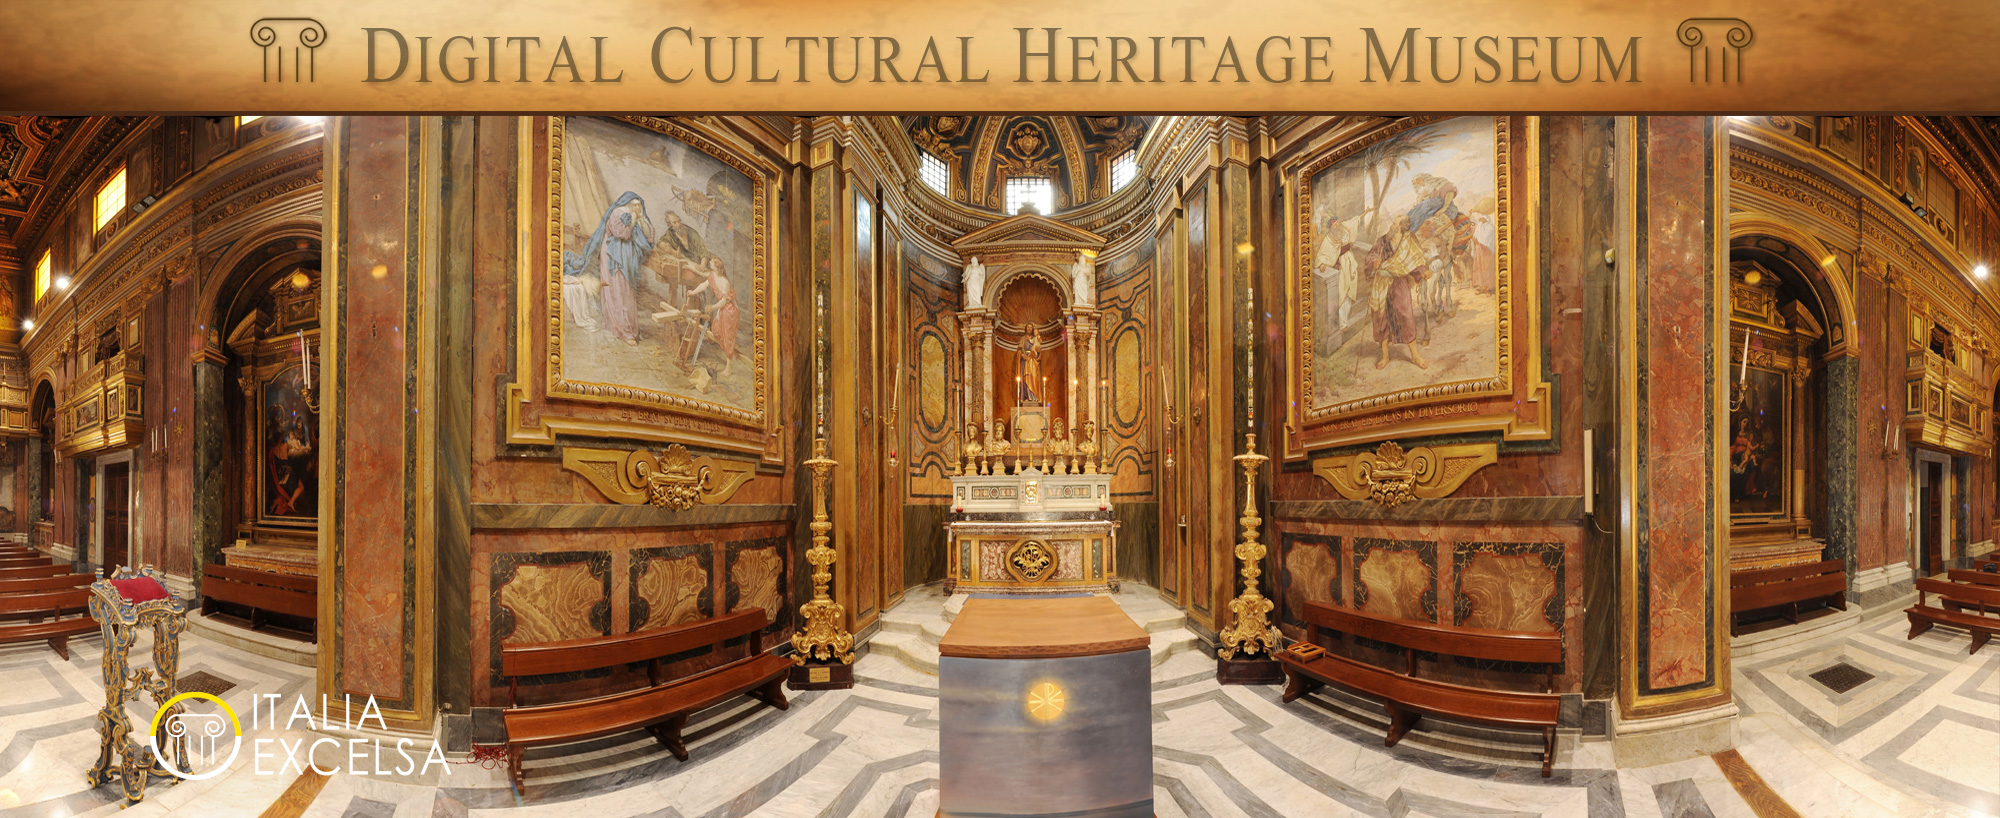 Italia Excelsa - Digital Cultural Heritage Museum - Fabio Gallo